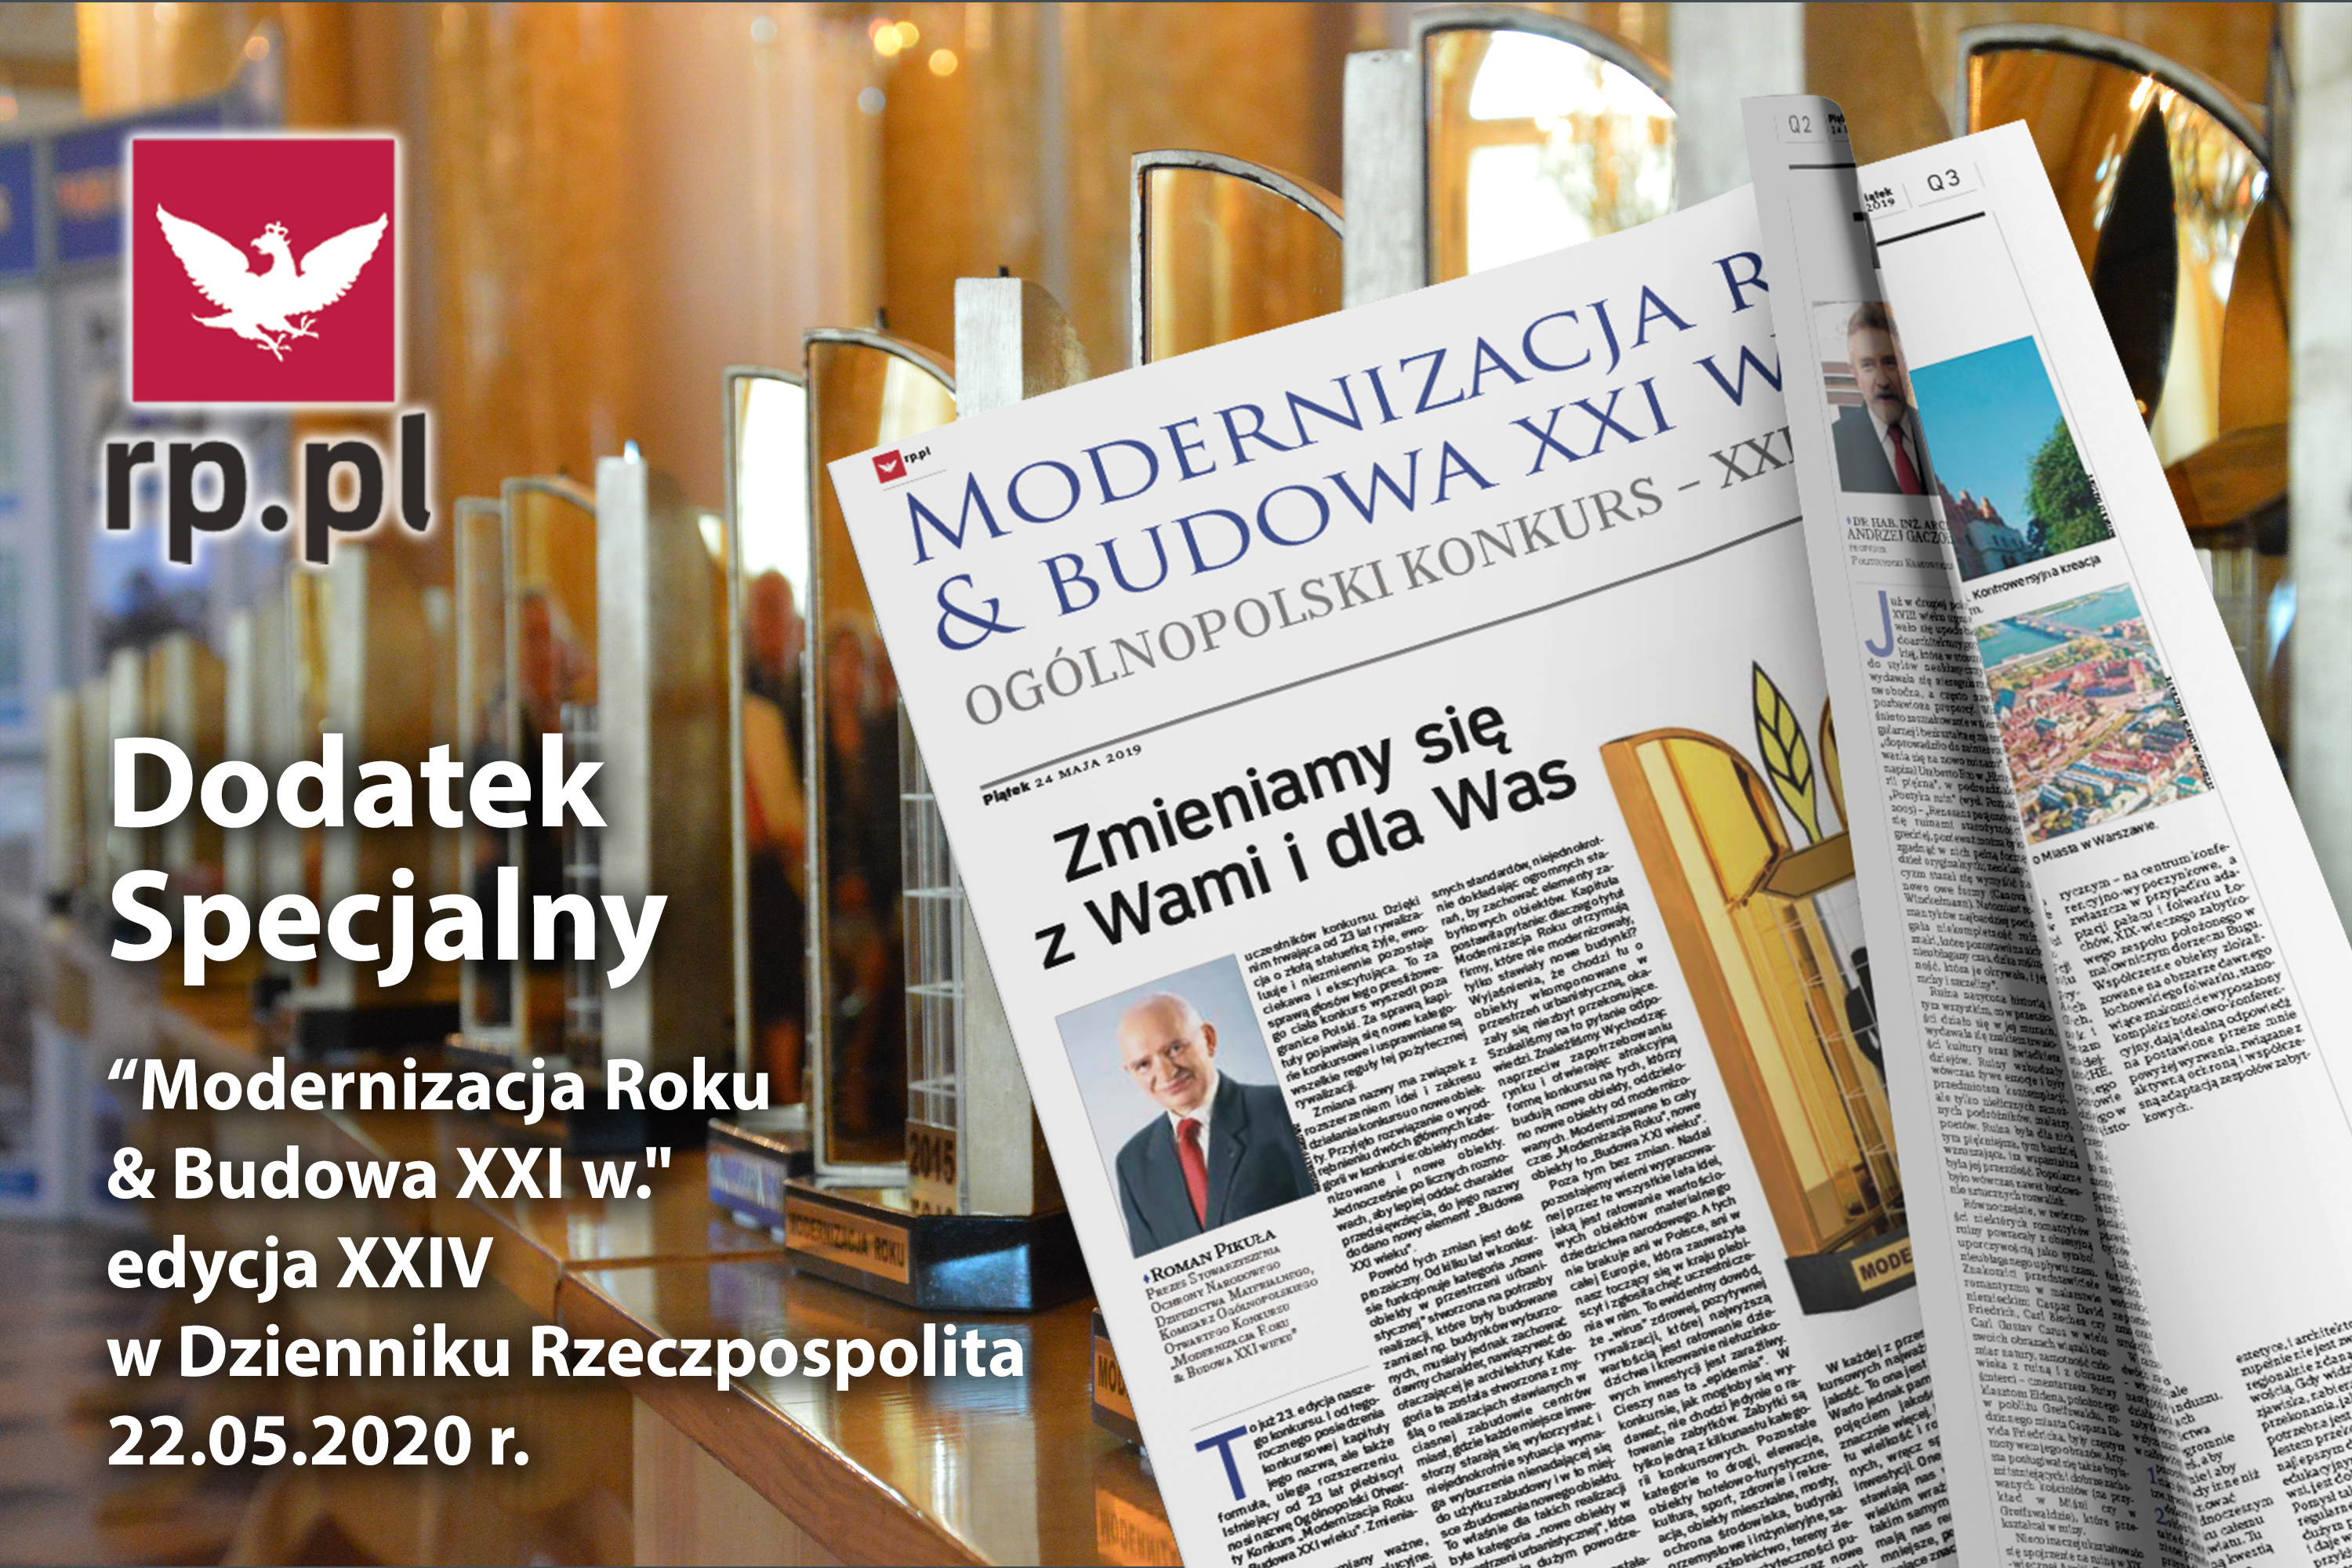 Modernizacja Roku w Dzienniku Rzeczpospolita